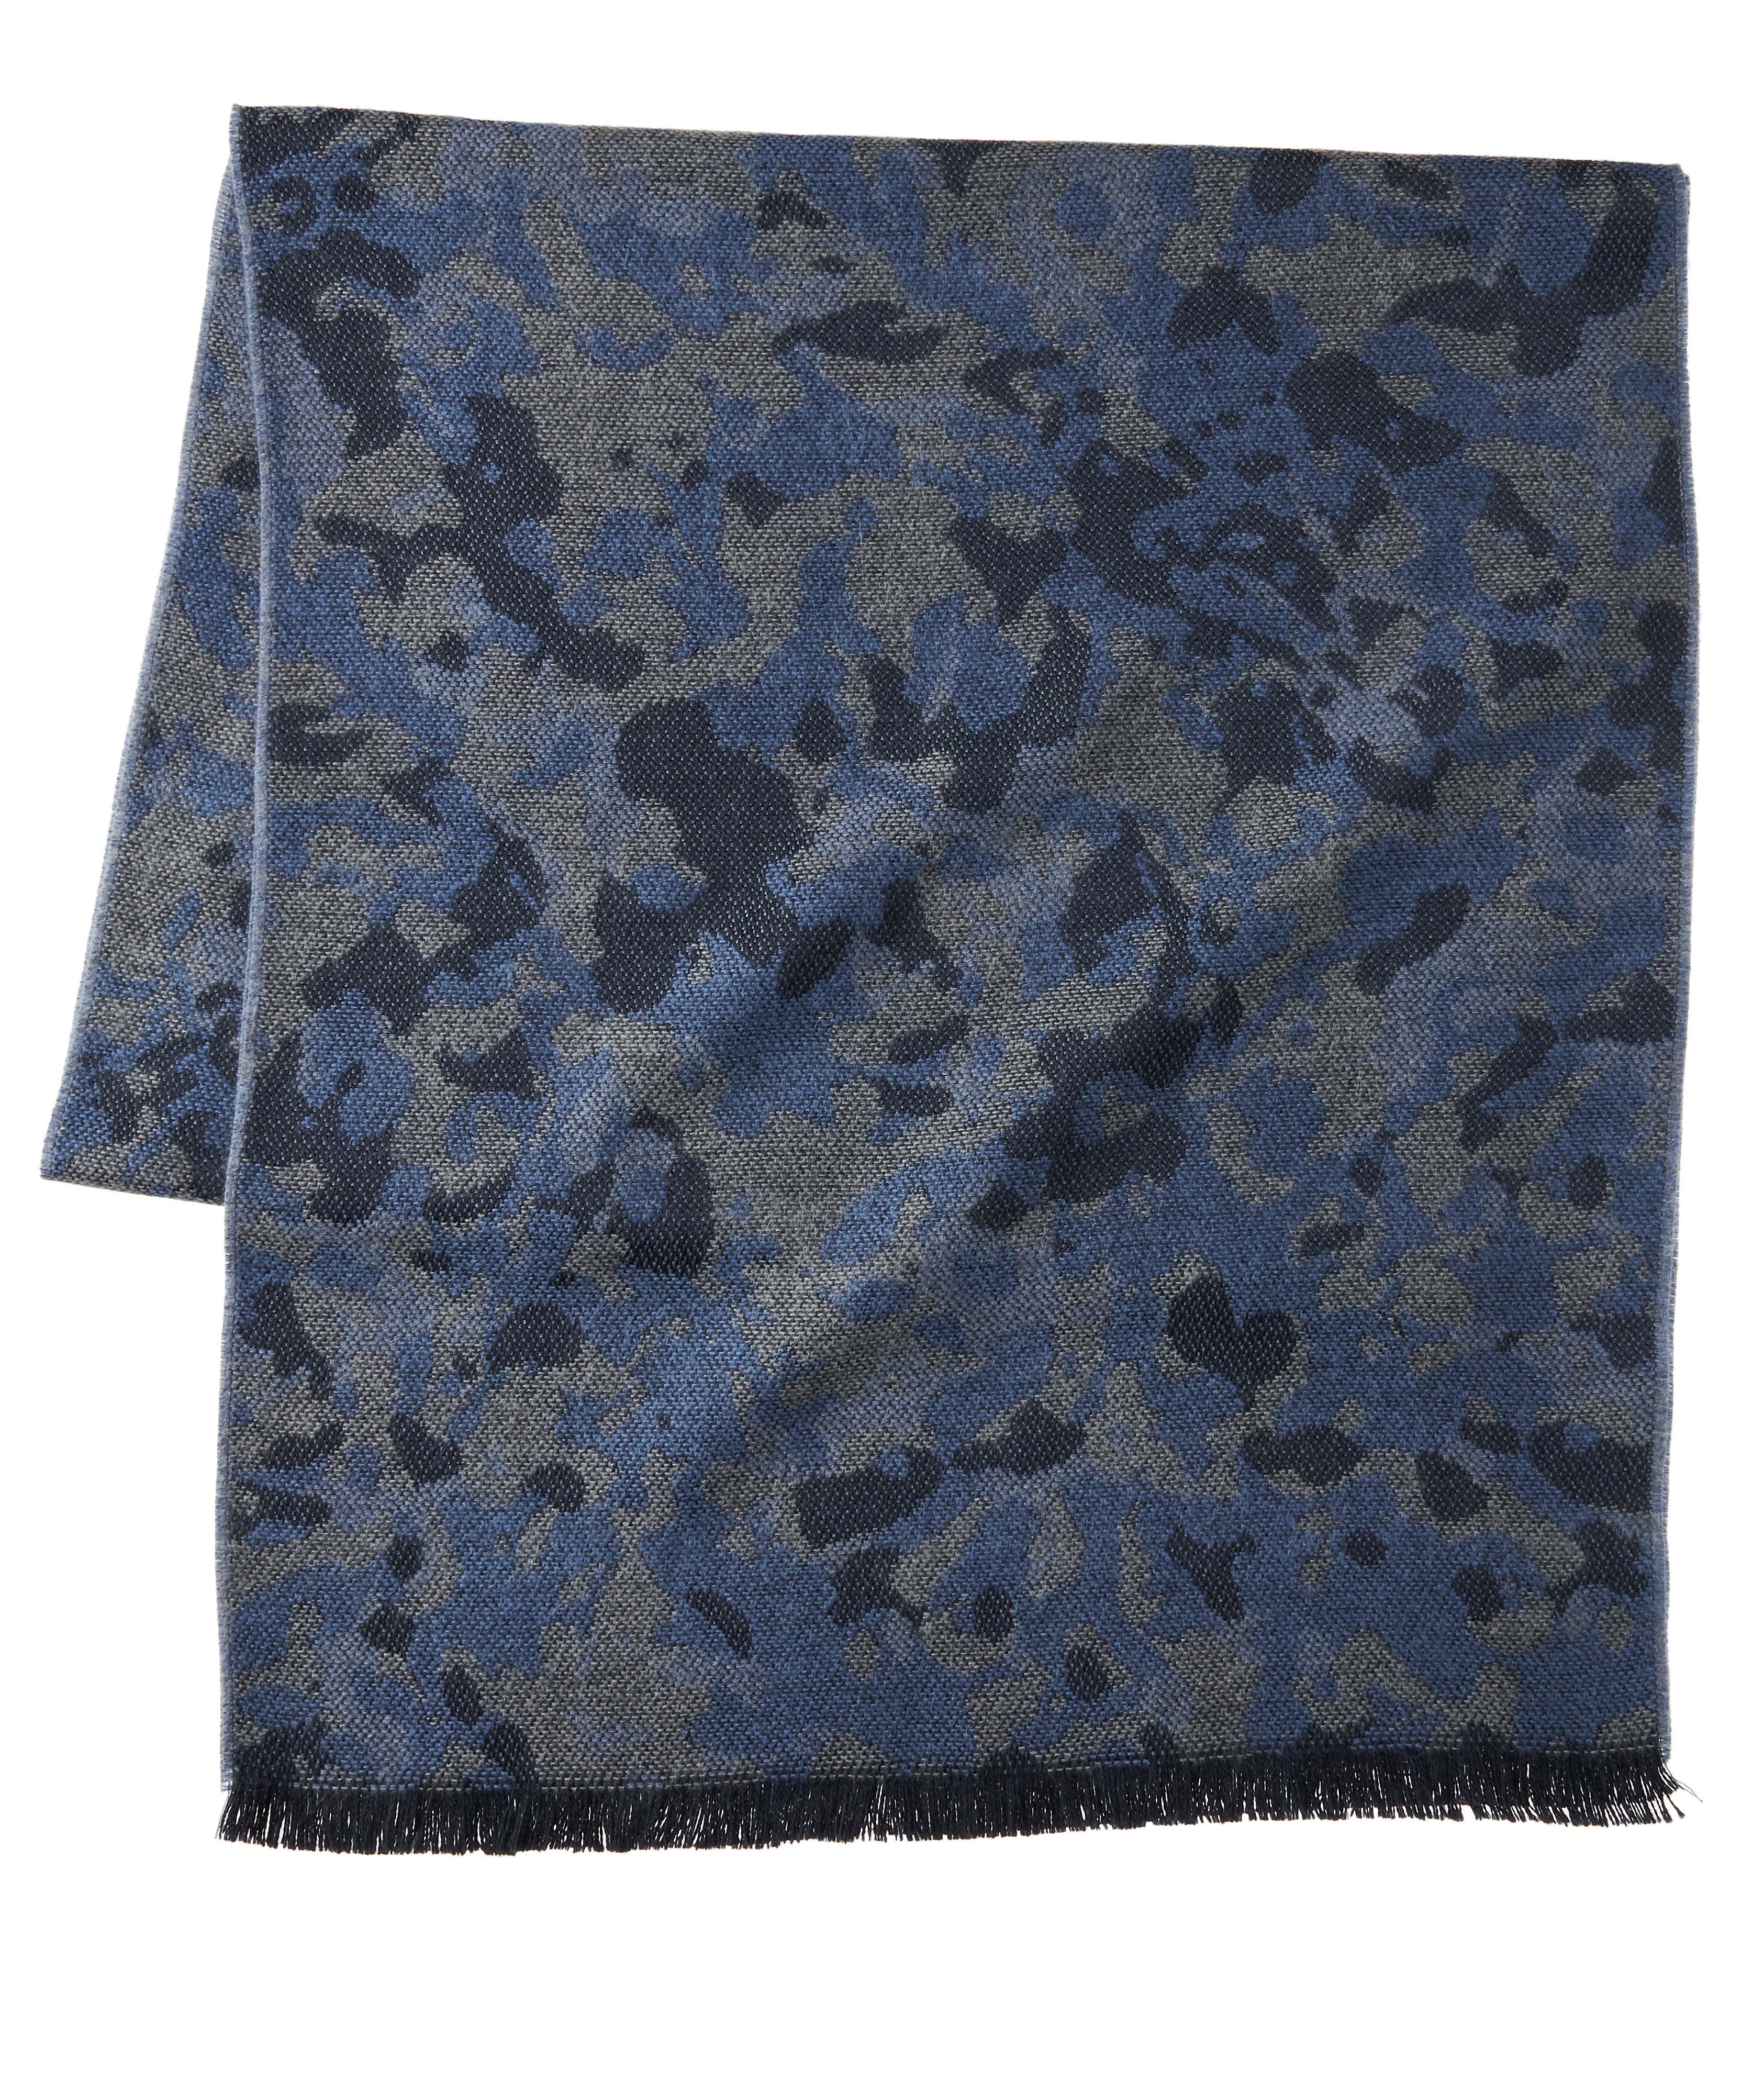 Écharpe en lainage à motif camouflage image 0